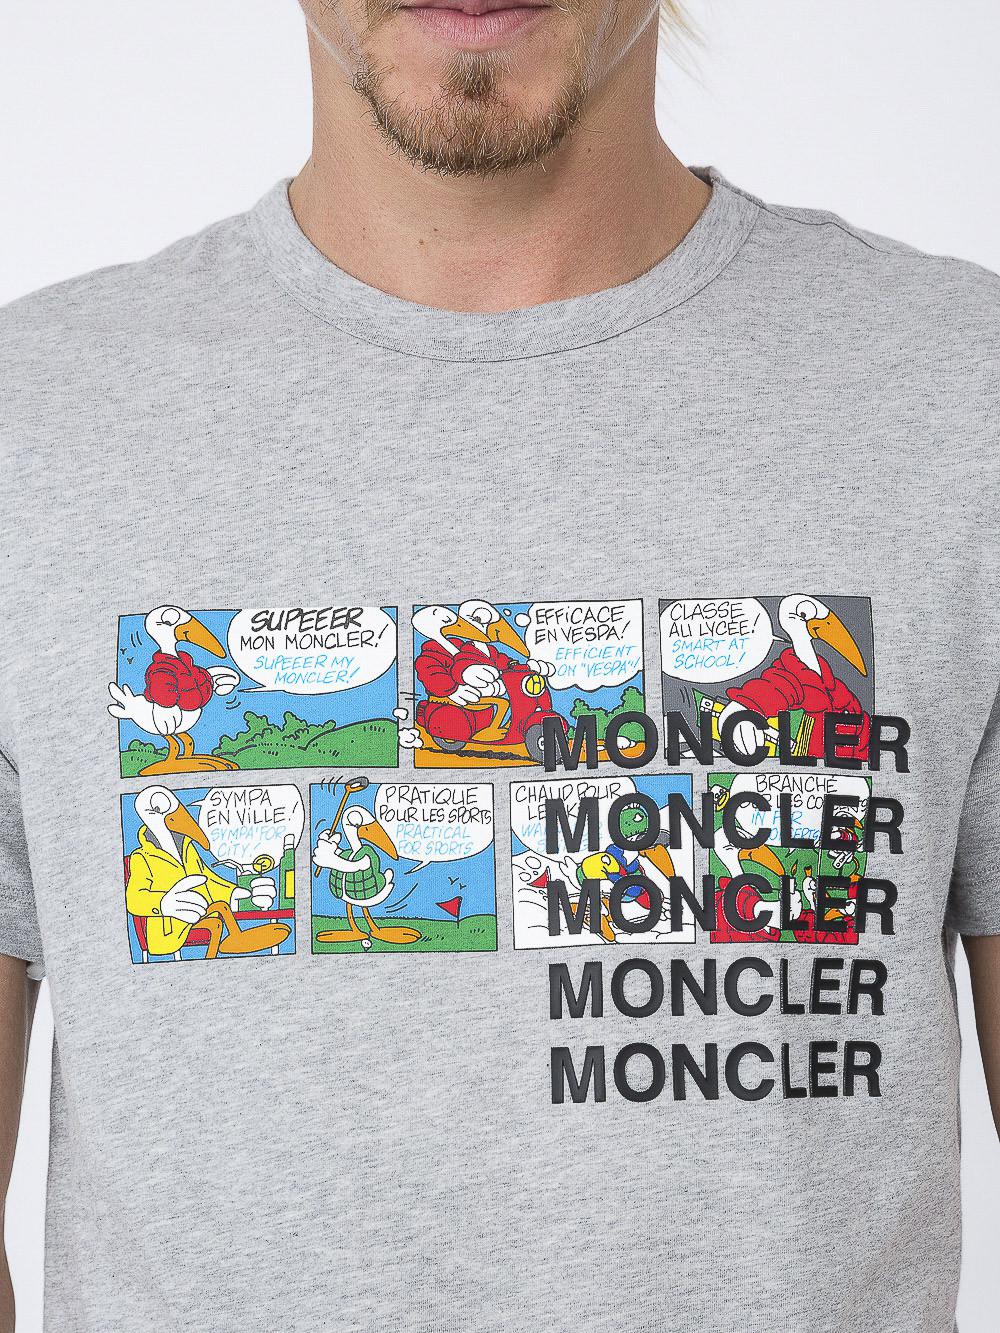 Moncler Cotton Cartoon Printed T-shirt 